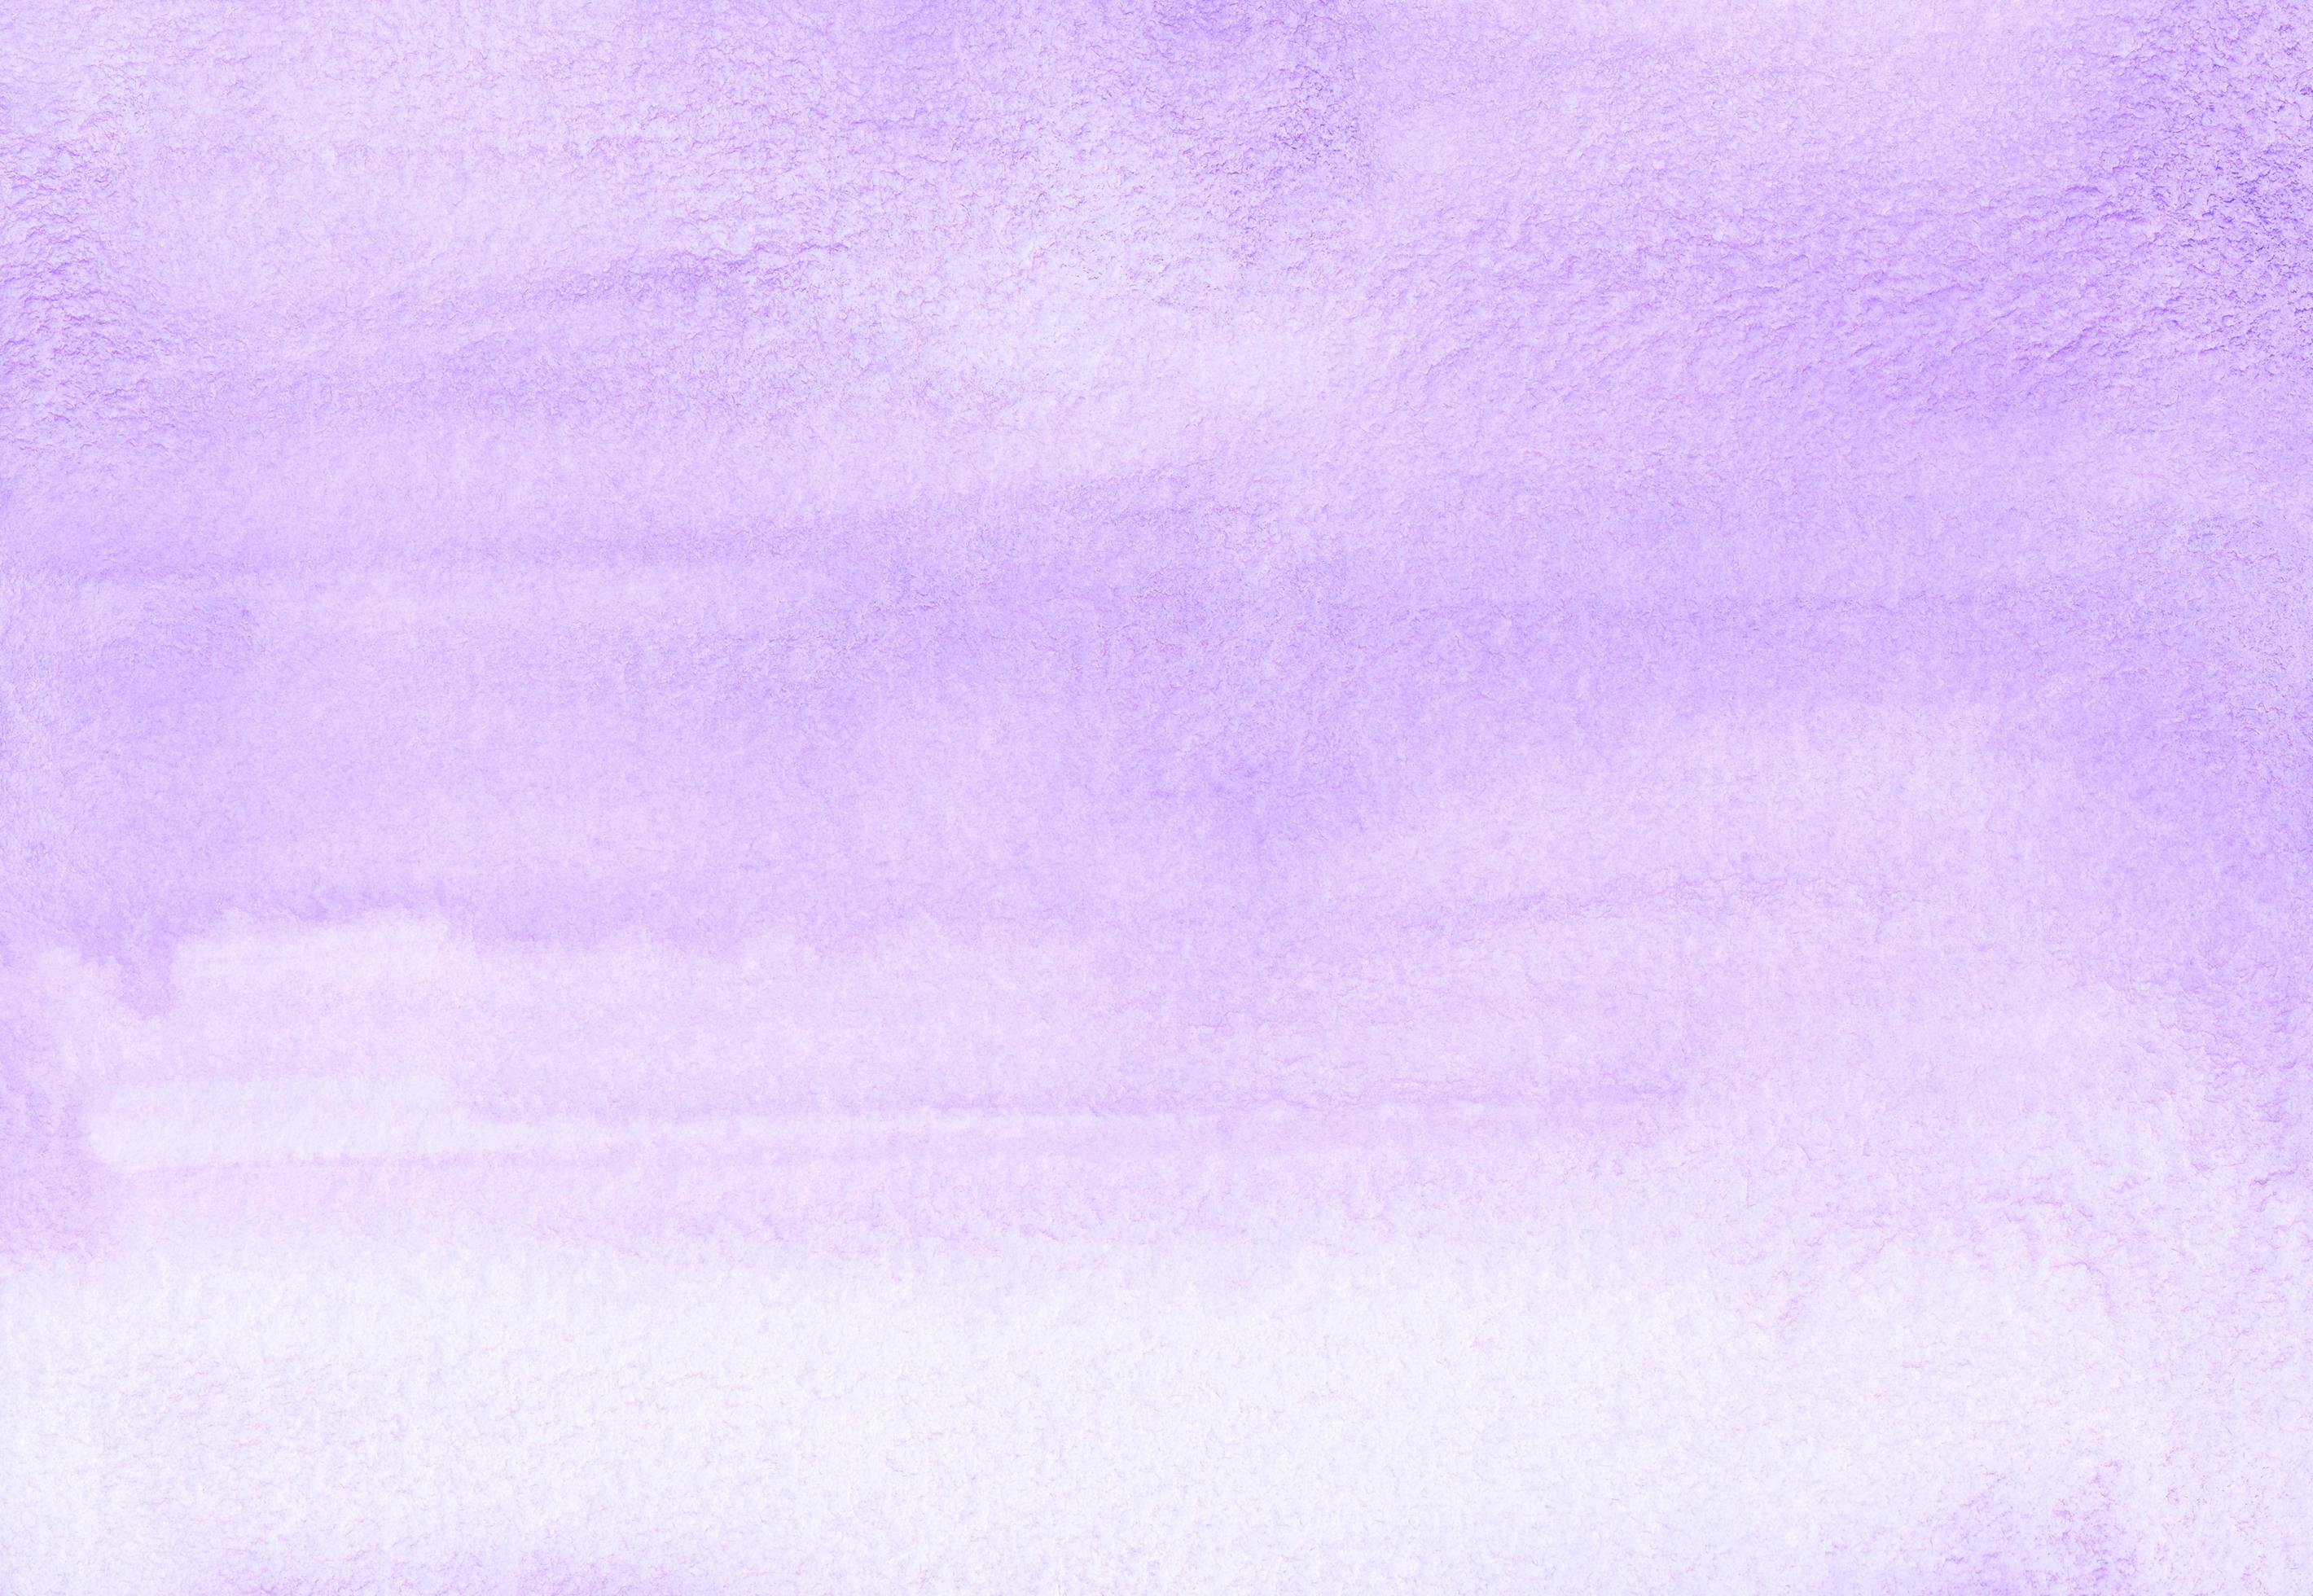 Nếu bạn yêu thích sự tinh tế và tinh khiết của màu trắng, thì nền tảng màu nước tím nhạt chuyển sắc ombre sẽ là lựa chọn hoàn hảo để cân bằng màu sắc và hương vị khác nhau. Kết cấu rõ ràng cùng sự chuyển động đầy quyến rũ của màu sắc sẽ khiến bạn cảm thấy thư giãn và thích thú.